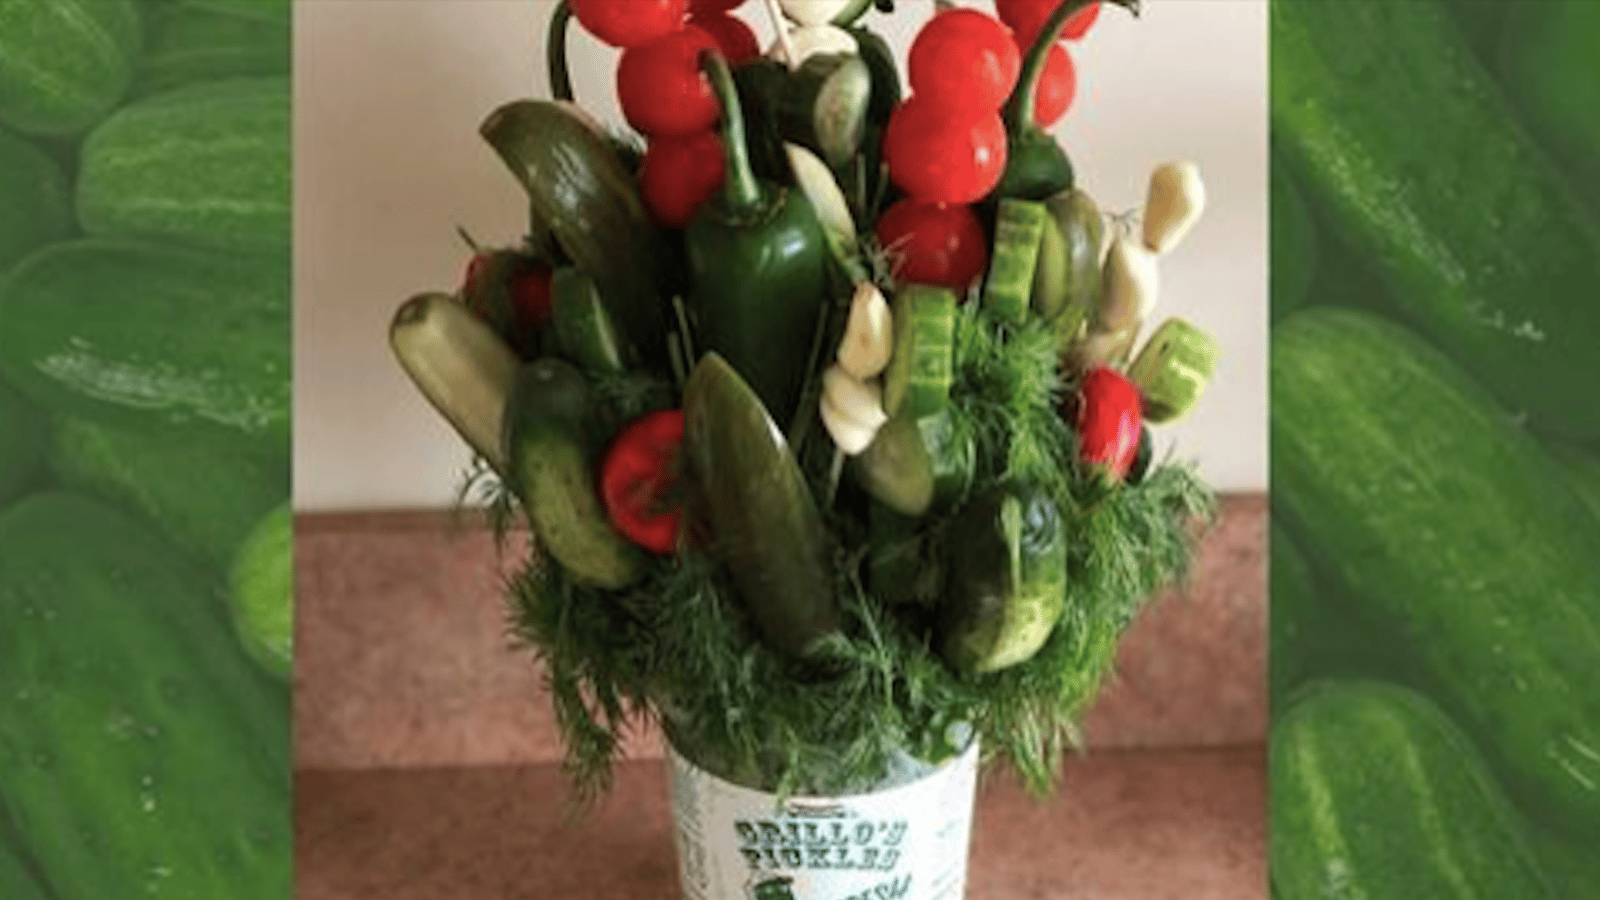 Le bouquet de cornichons est une alternative savoureuse aux fleurs pour la Saint-Valentin